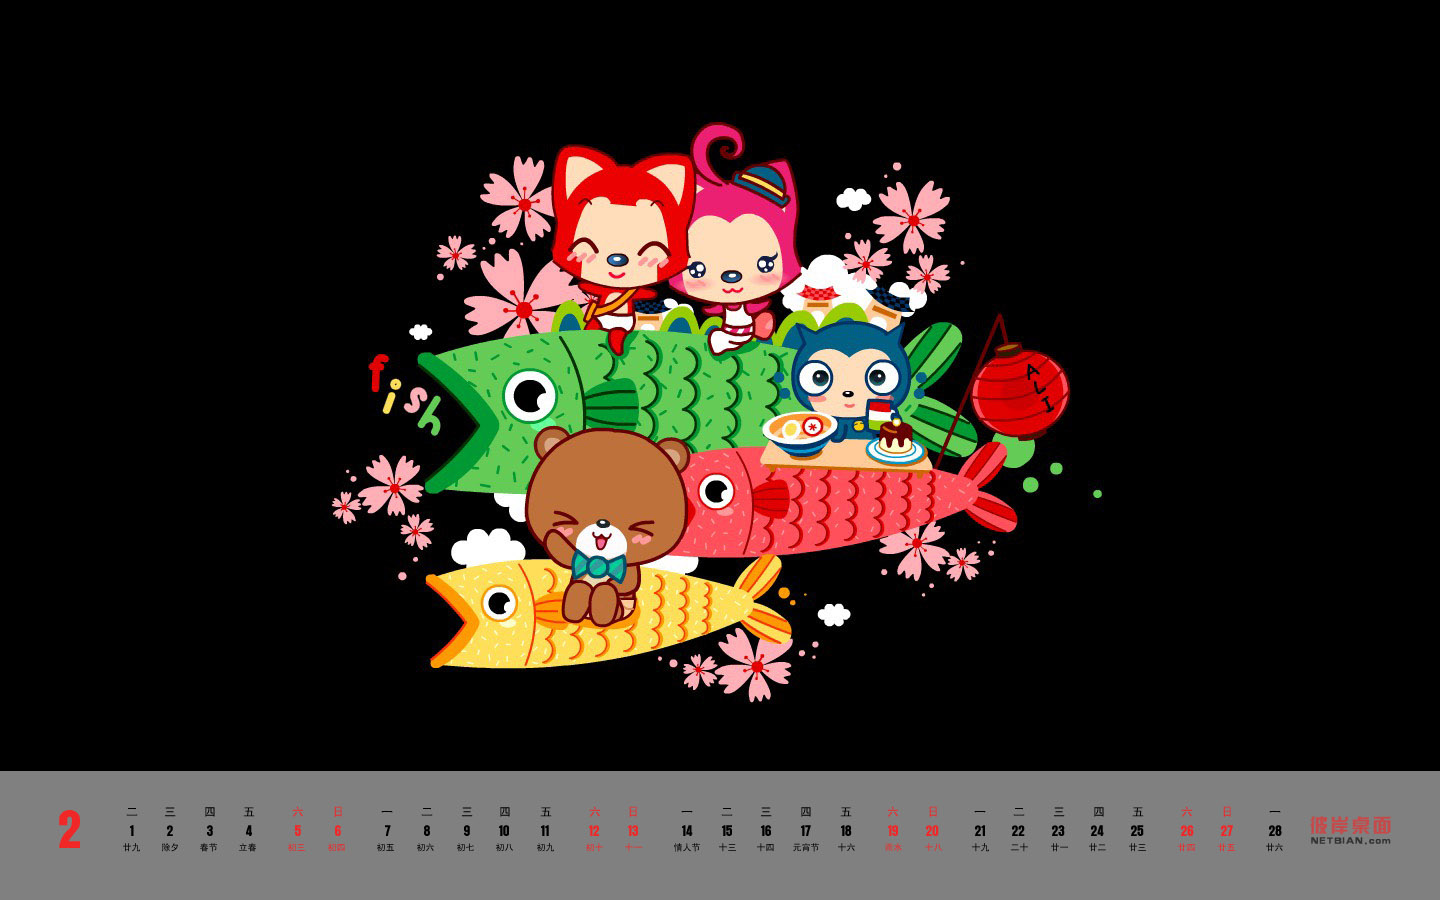 Niannianyu February 2011 calendar desktop wallpaper